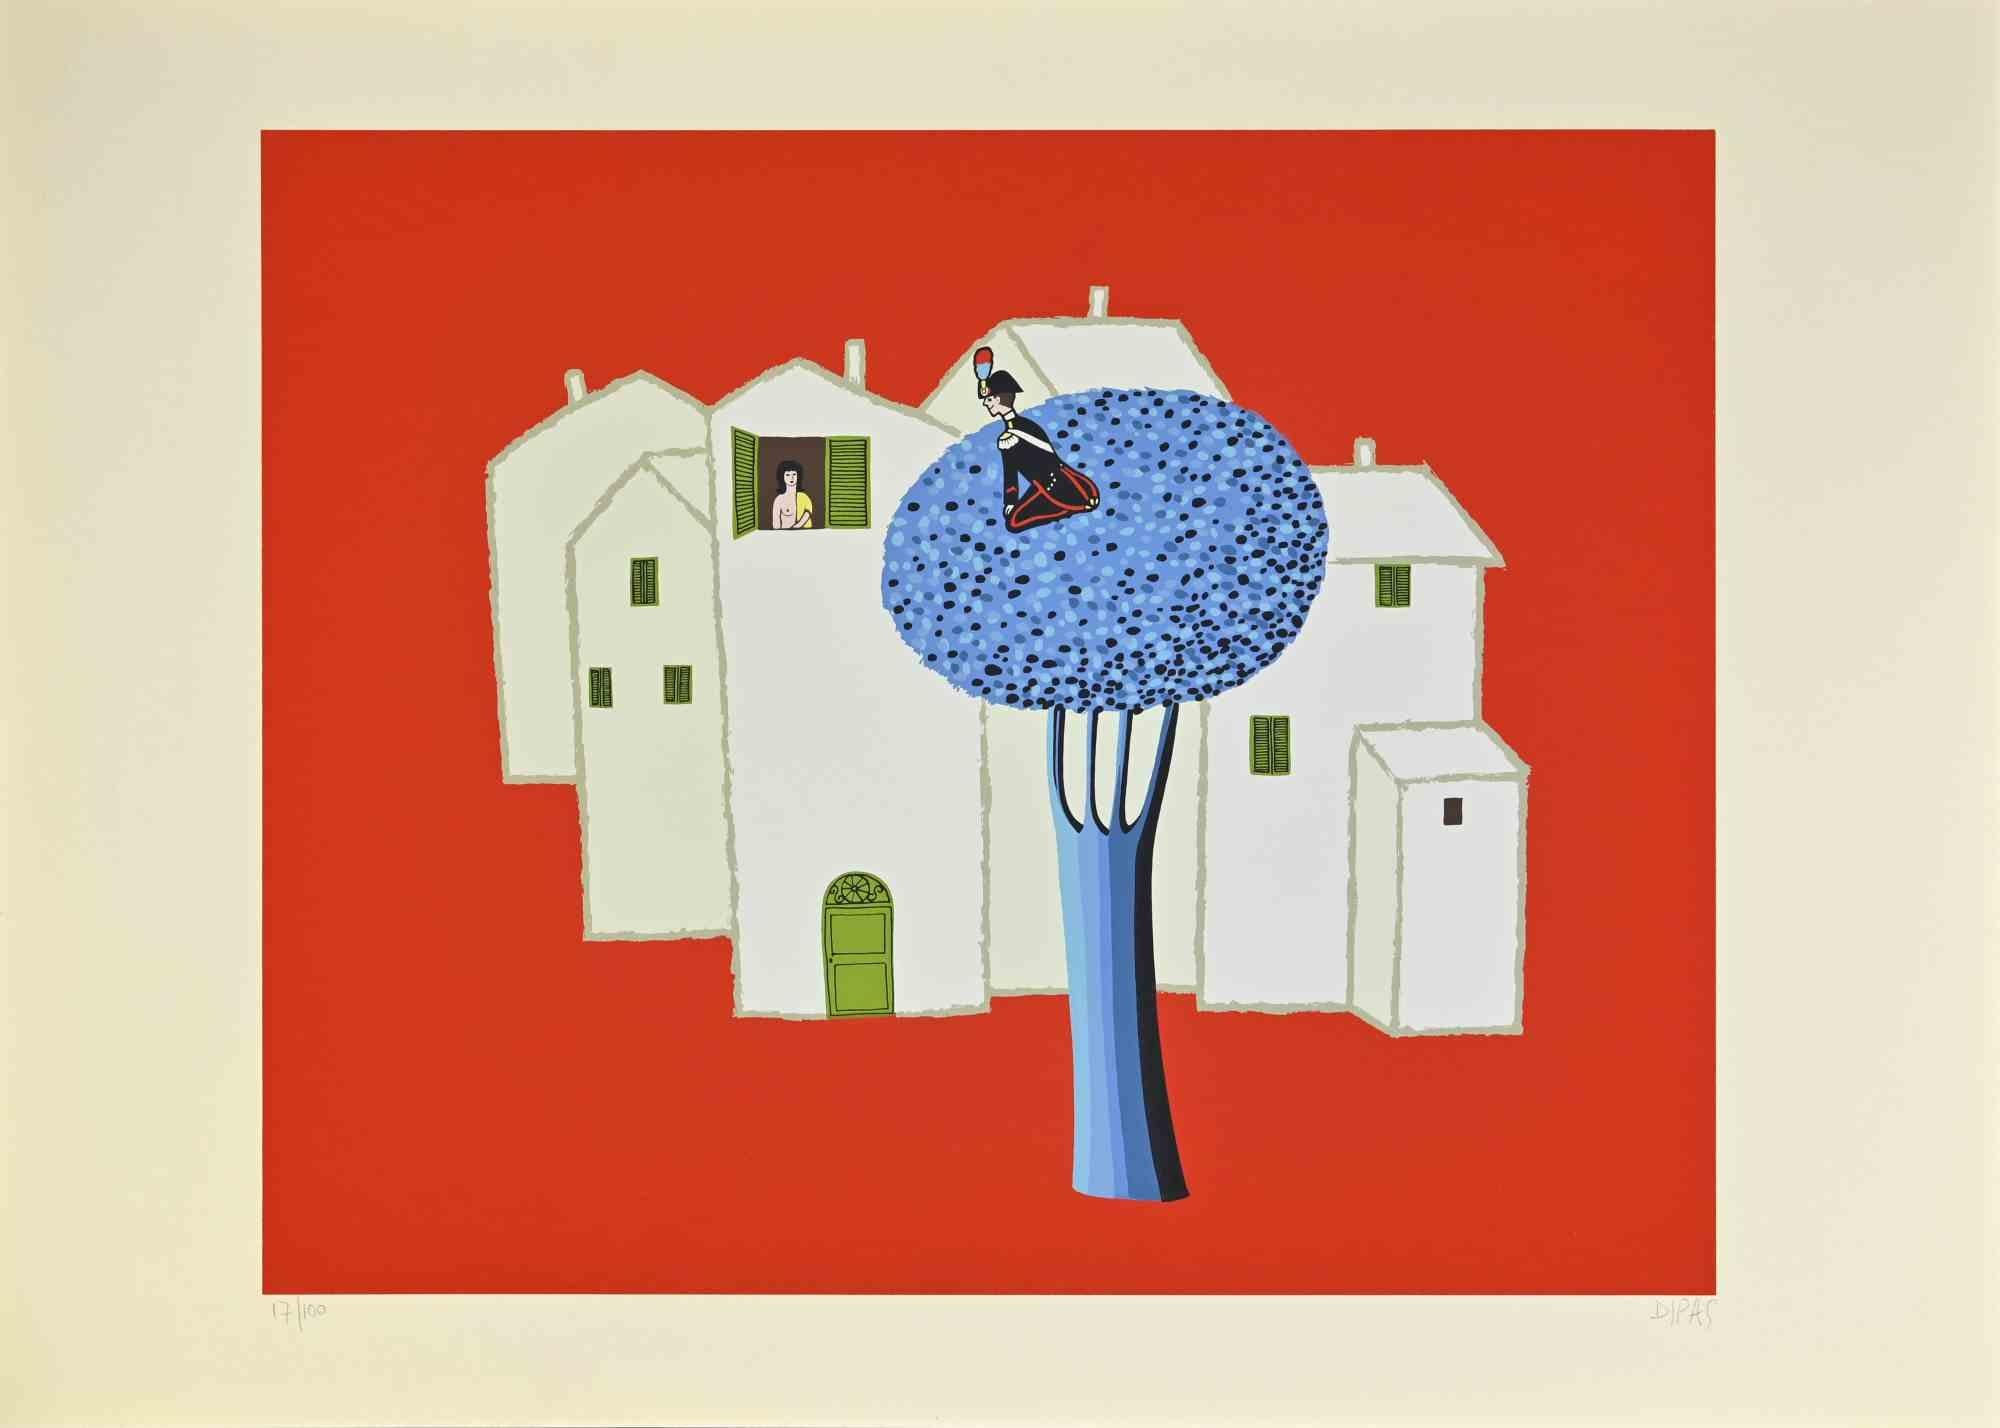 Der blaue Baum ist ein zeitgenössisches Kunstwerk, das der Künstler Dipas in den 1970er Jahren geschaffen hat.

Gemischter farbiger Siebdruck.

Handsigniert am unteren rechten Rand.

Am linken unteren Rand nummeriert.

Auflage von 17/100.